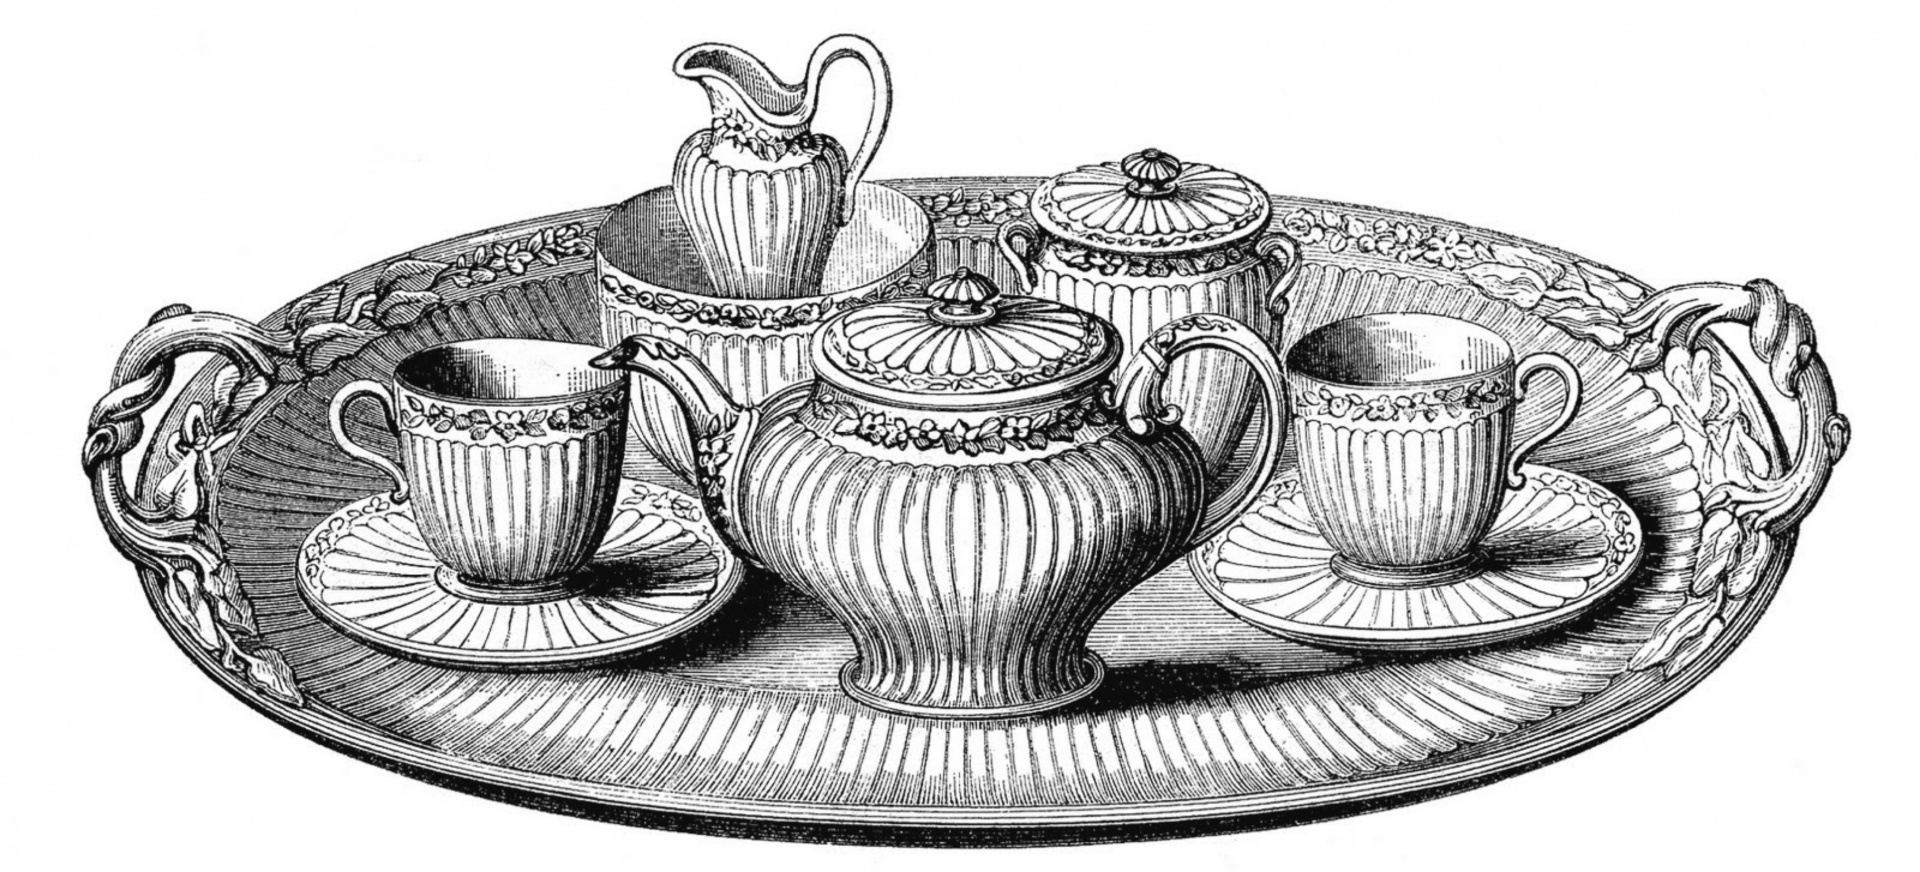 Tea set vintage art old antique illustration